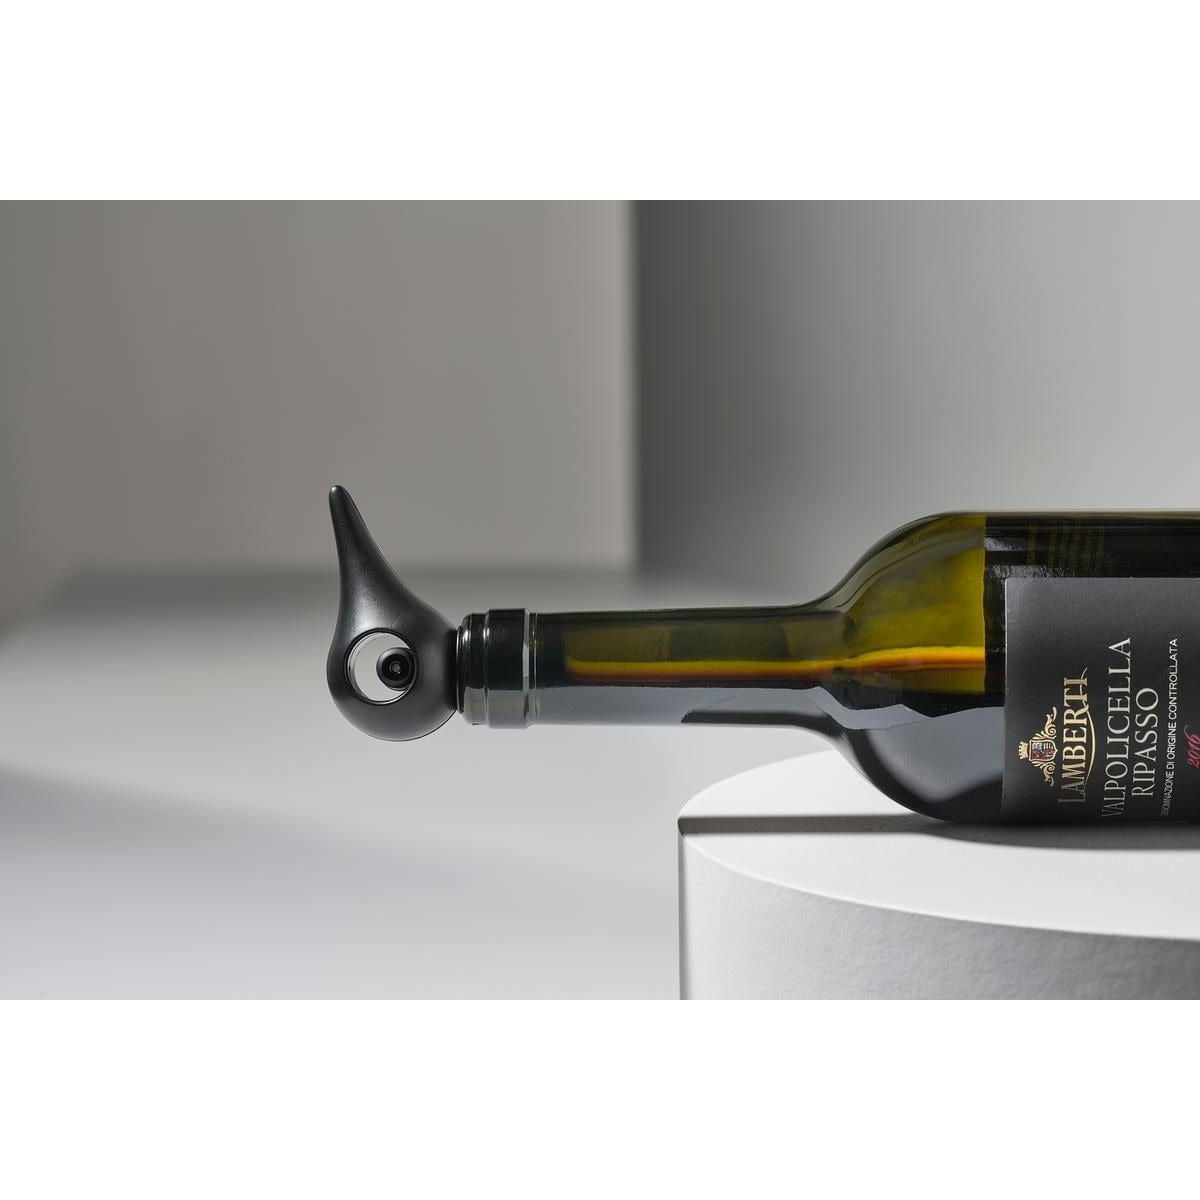 Zone Danmörk rokkar vín lokun 6,4 x3,2 cm, svart